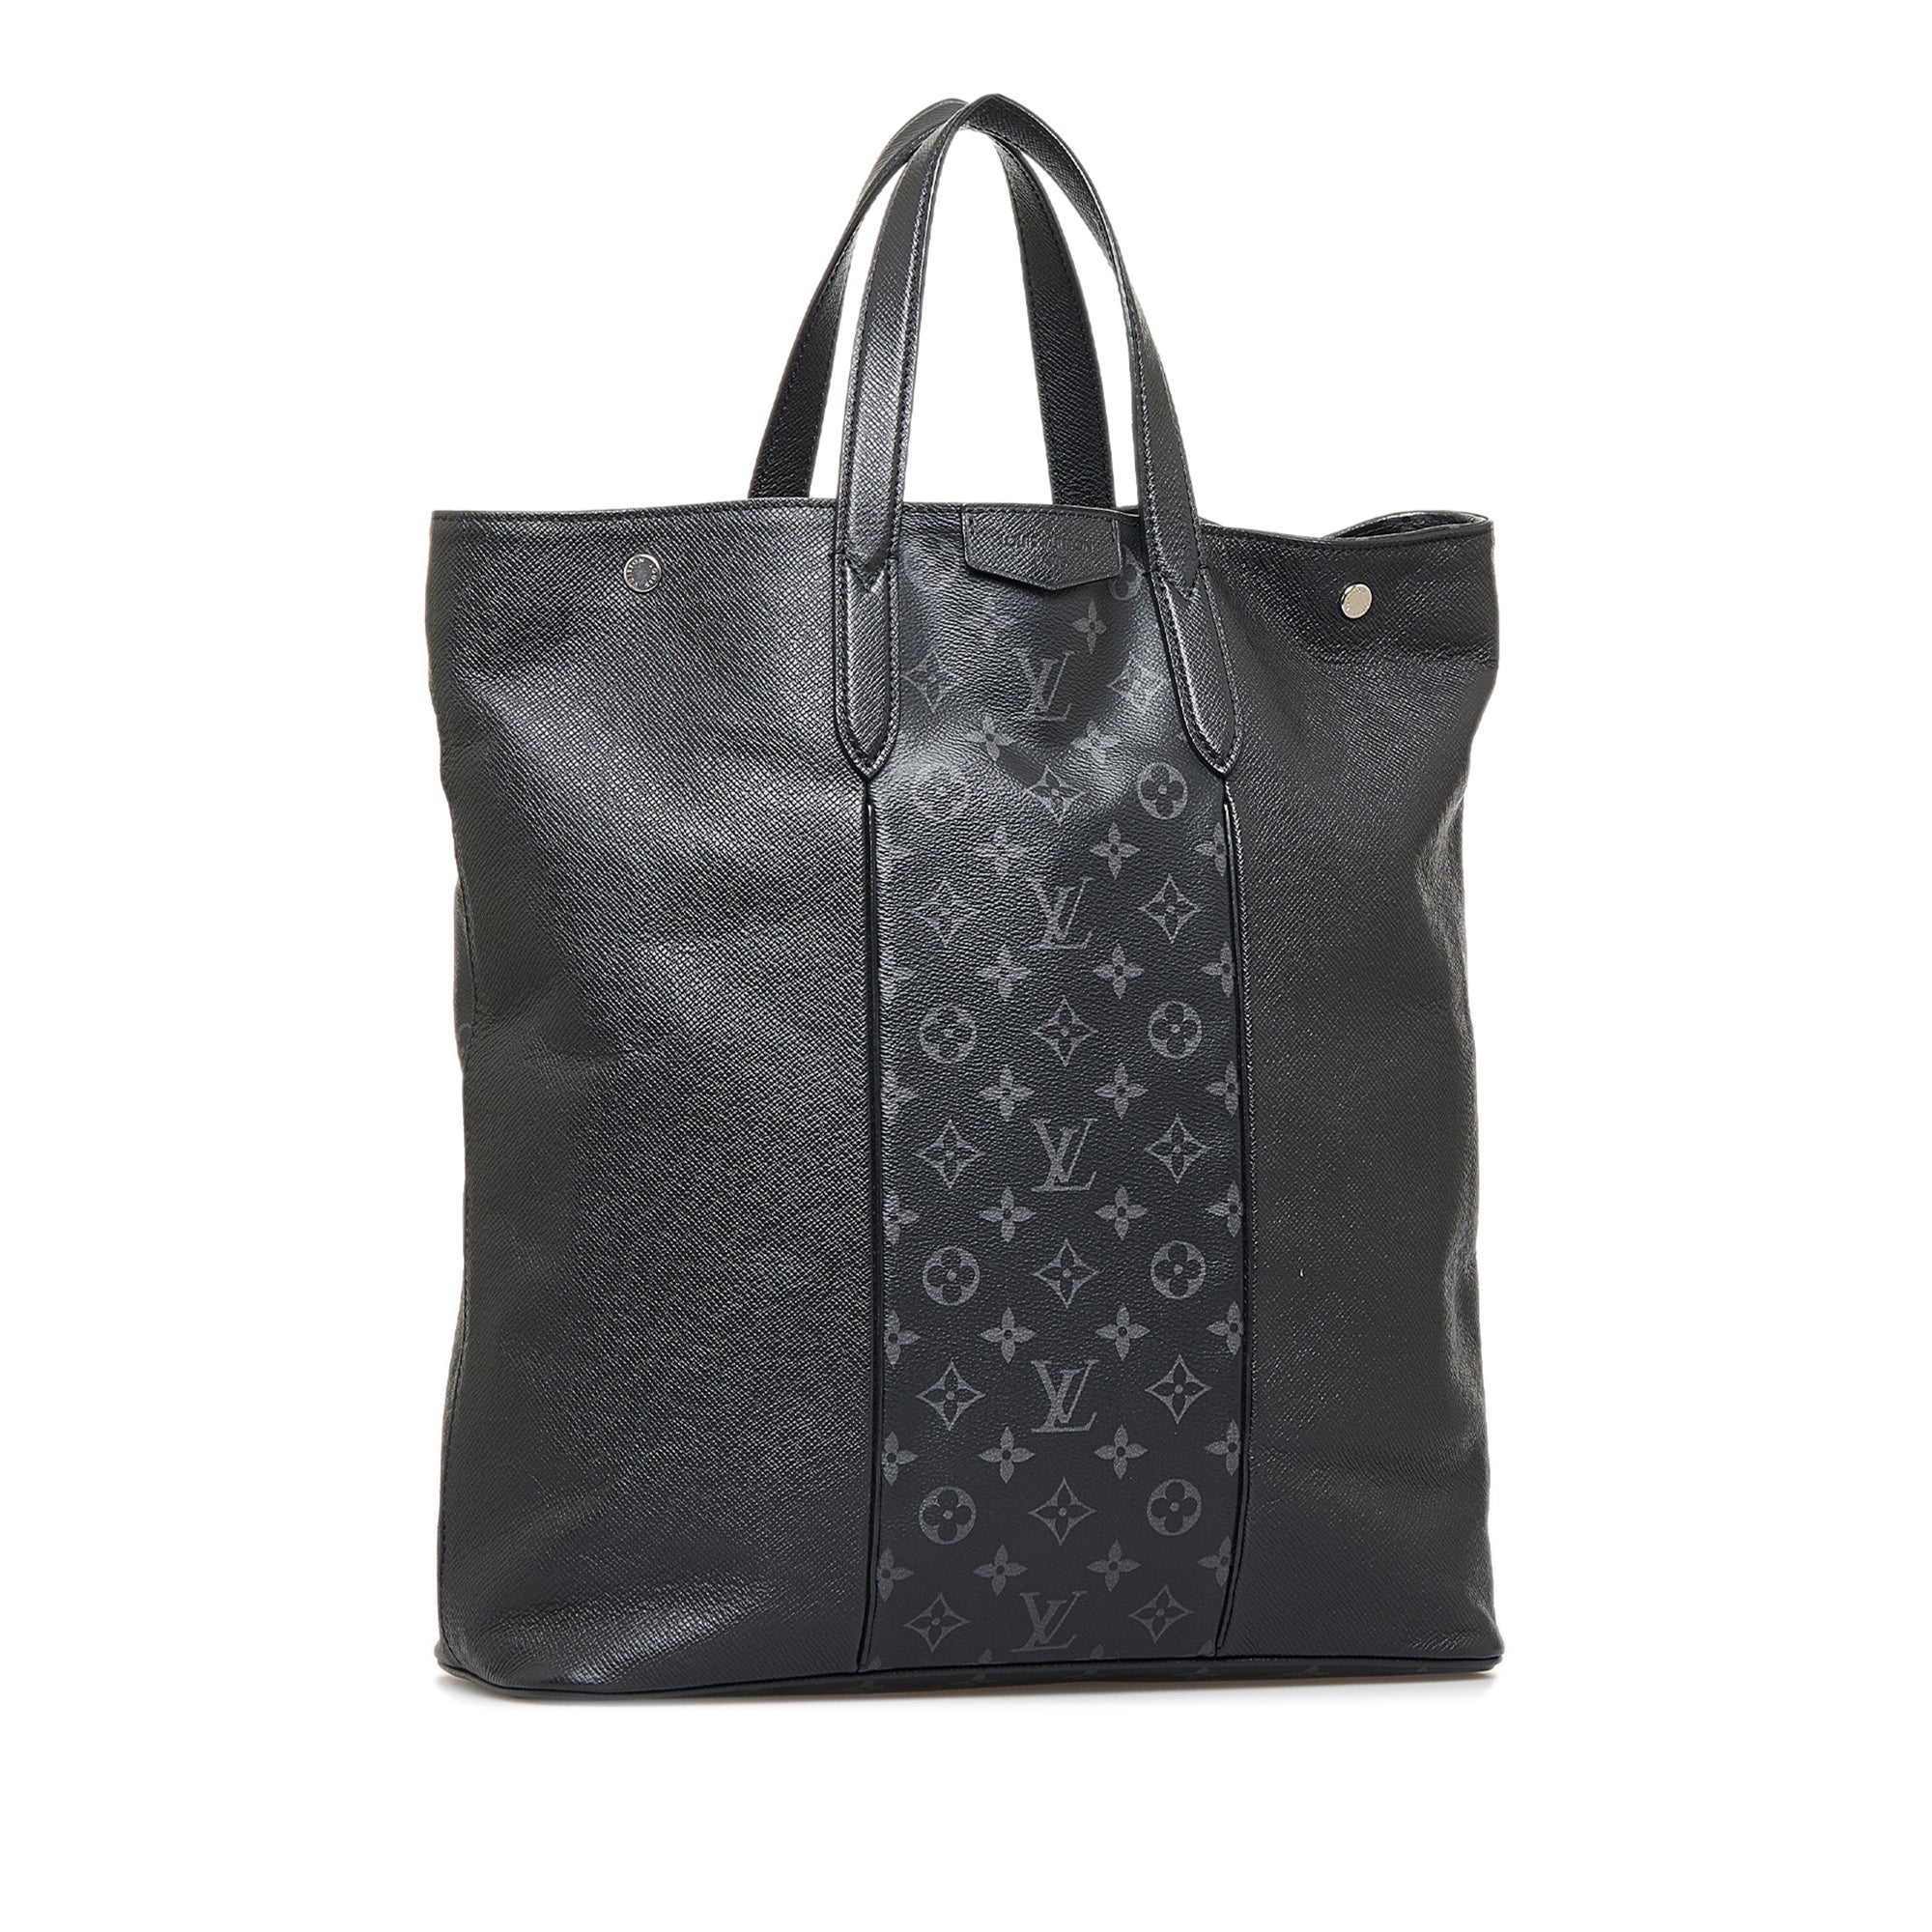 Louis Vuitton x Fragment - Authenticated Bag - Cloth Black Plain for Men, Good Condition